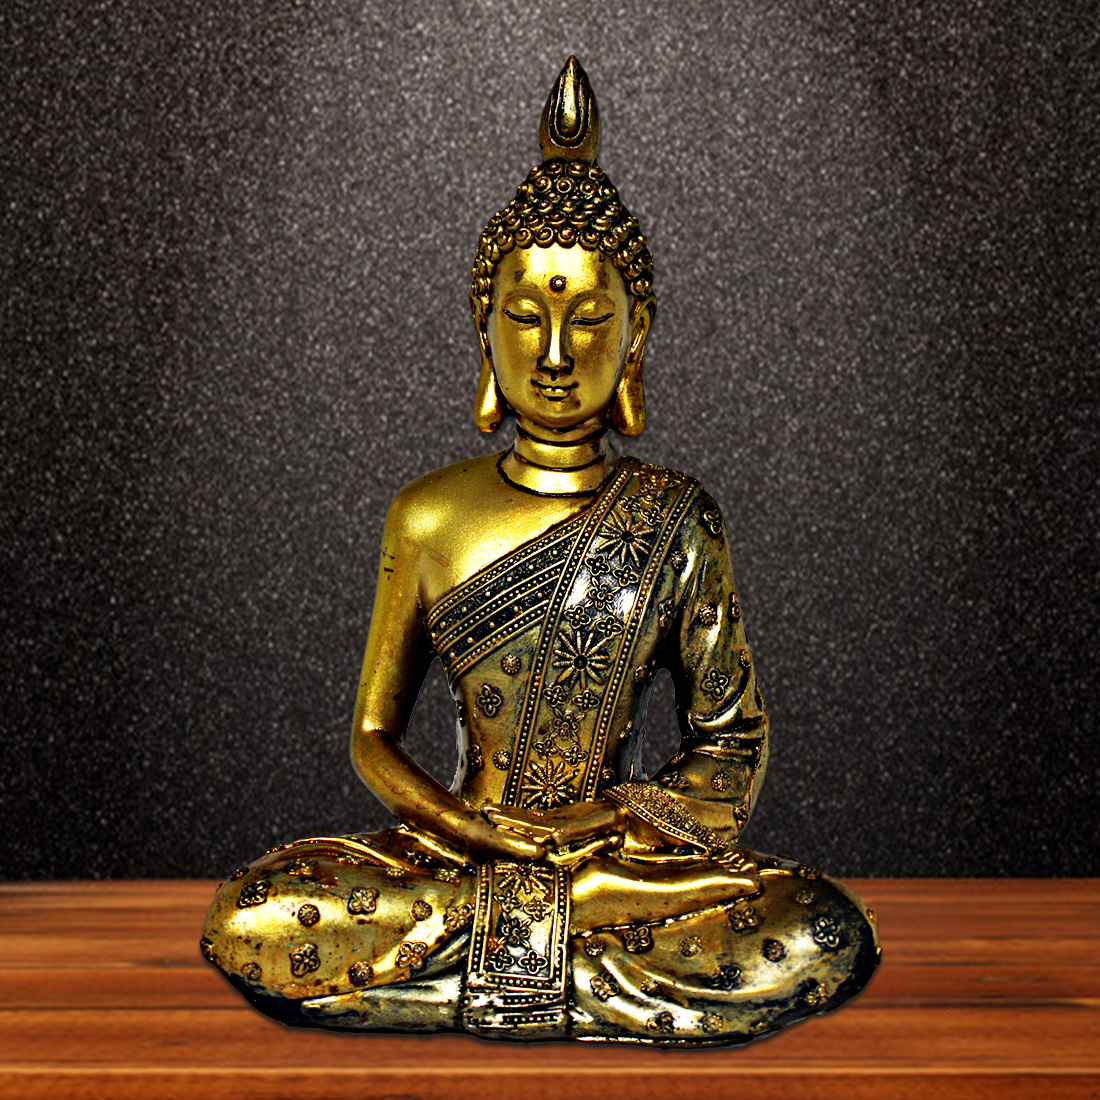 ORKA Buddha Decorative Figurine 7.6